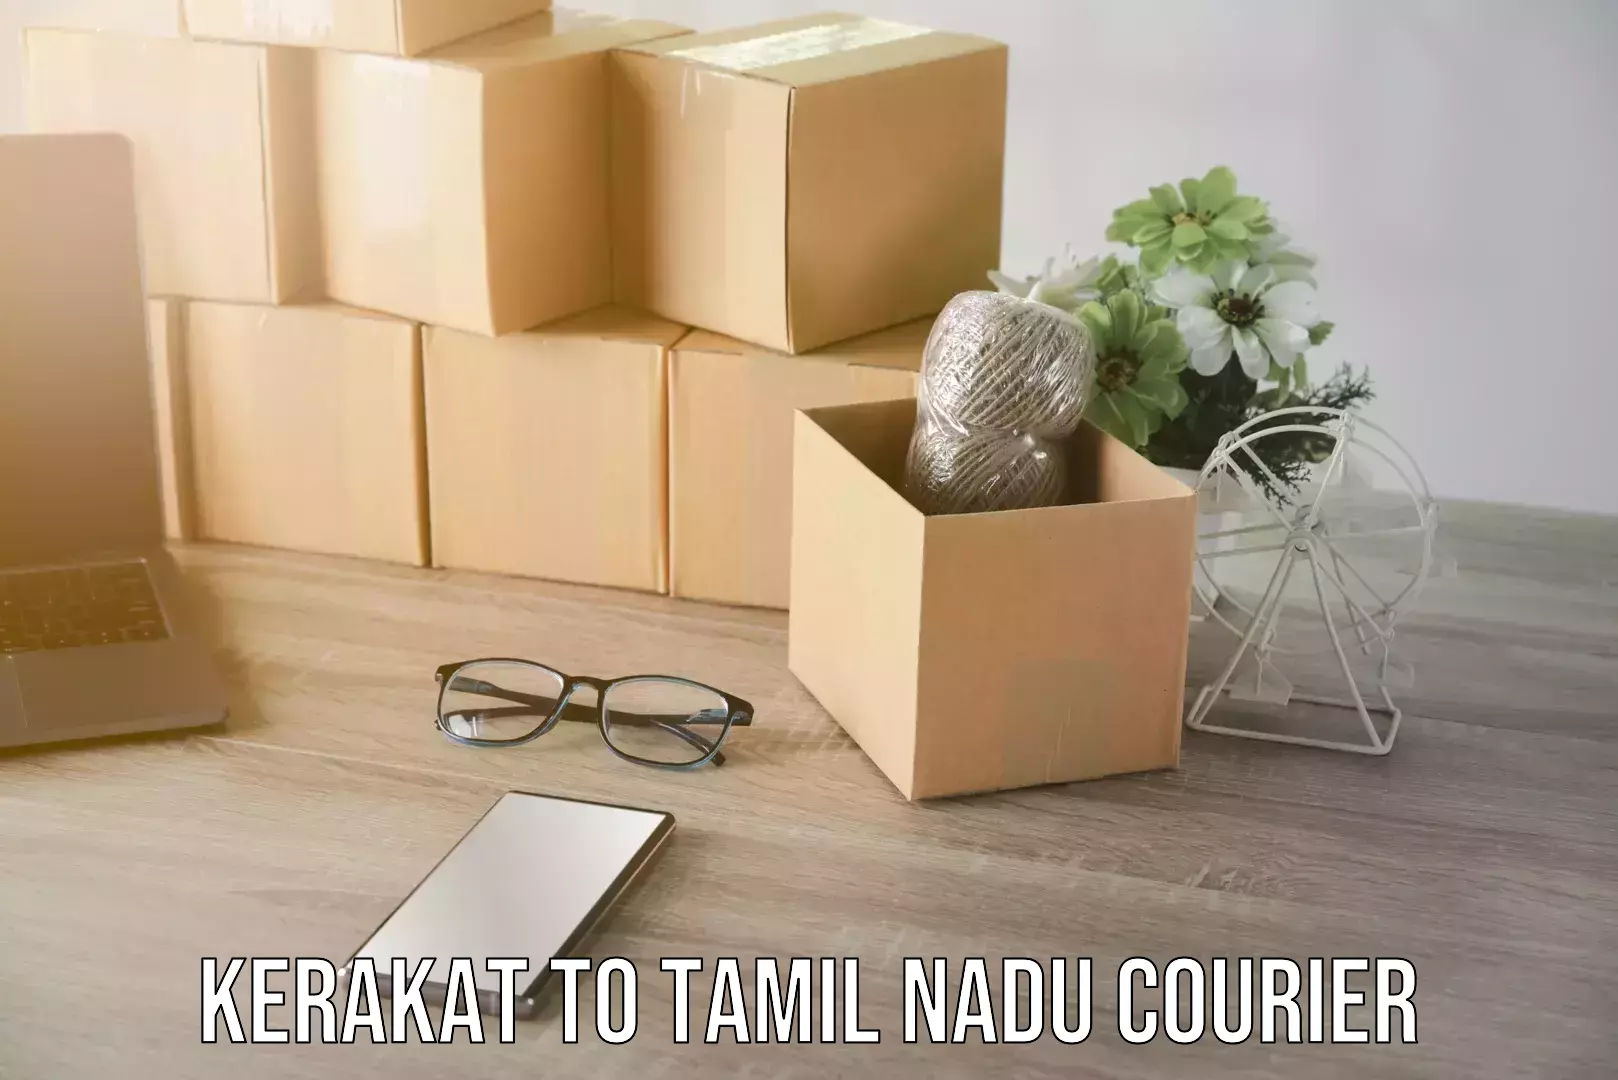 Furniture moving plans Kerakat to Tamil Nadu